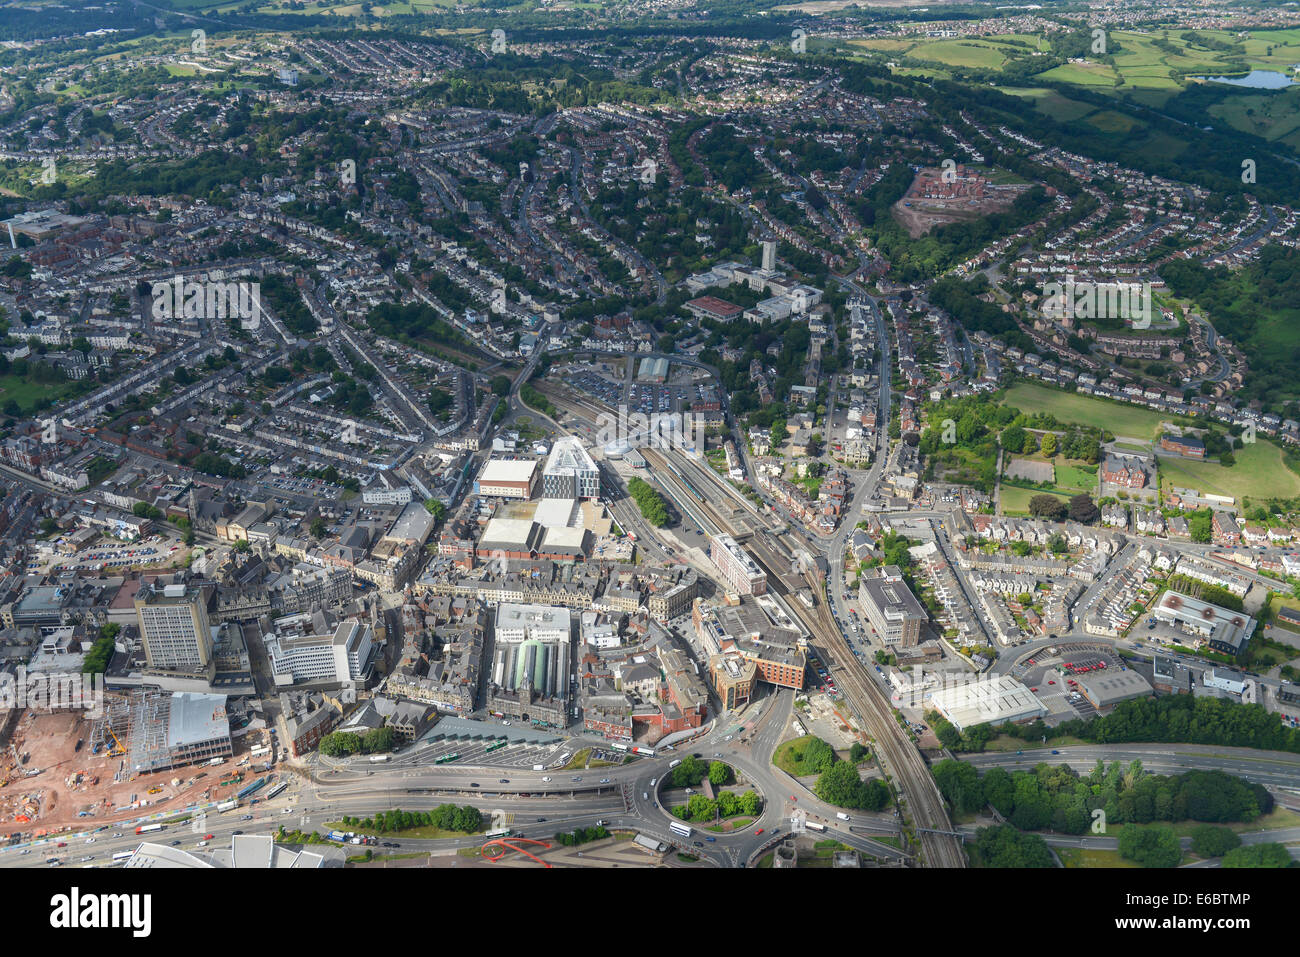 Una veduta aerea del centro città di Newport in Galles del Sud che mostra la zona attorno alla stazione ferroviaria Foto Stock